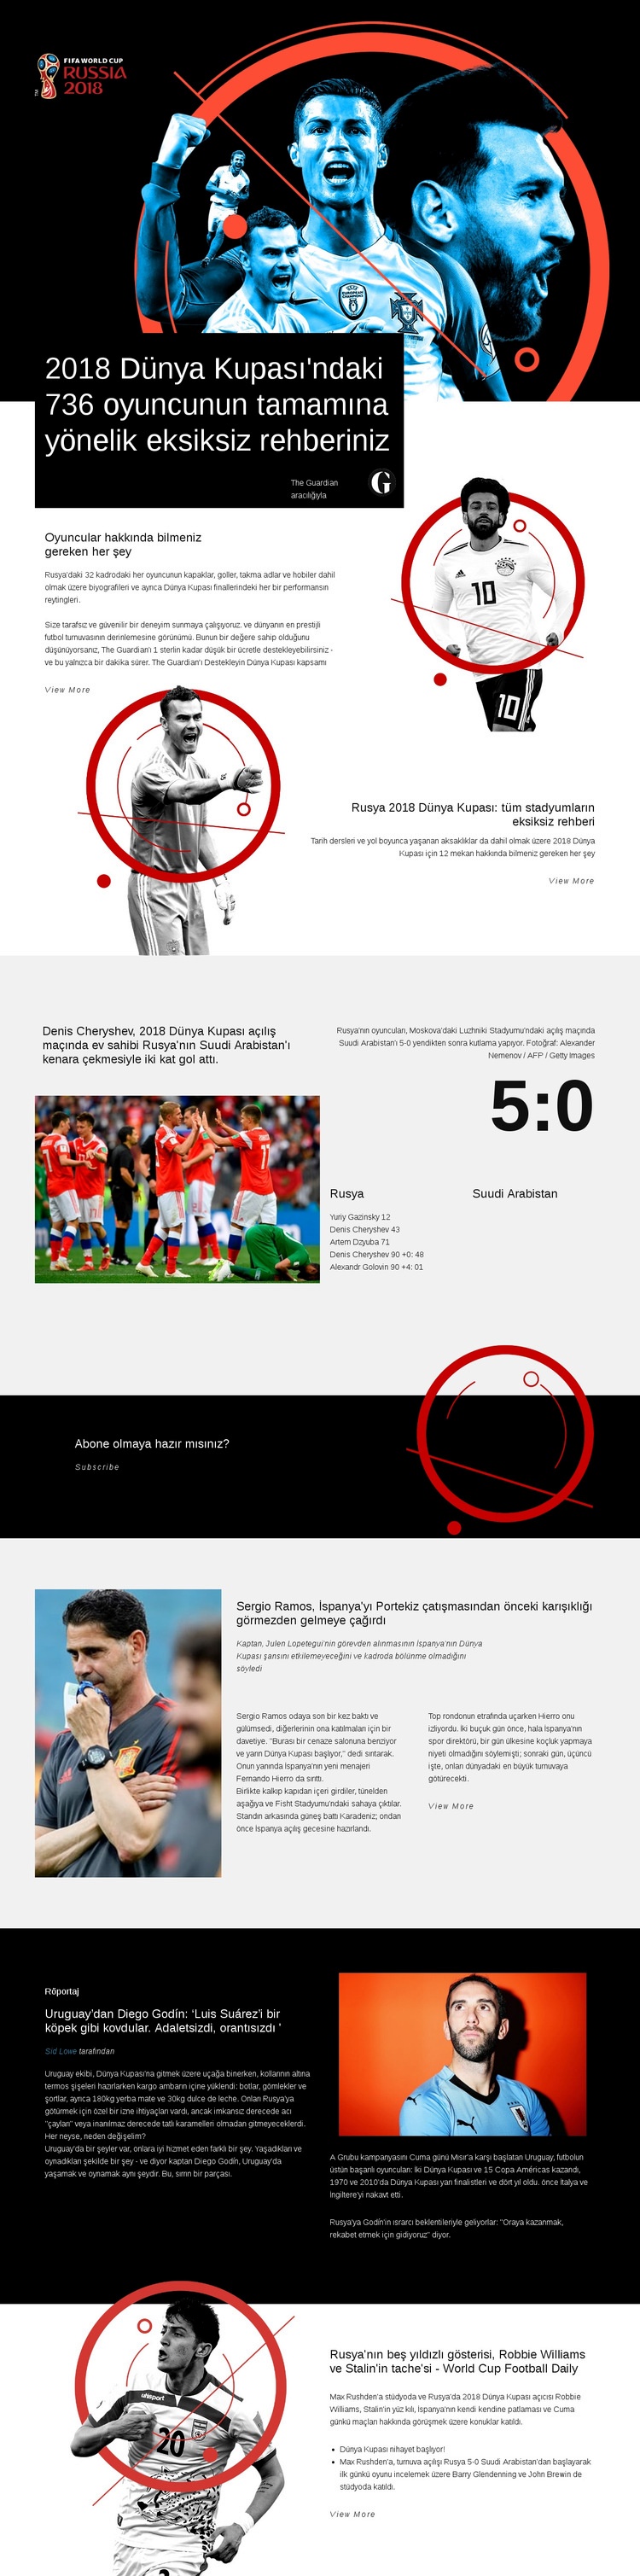 Dünya Kupası 2018 Açılış sayfası